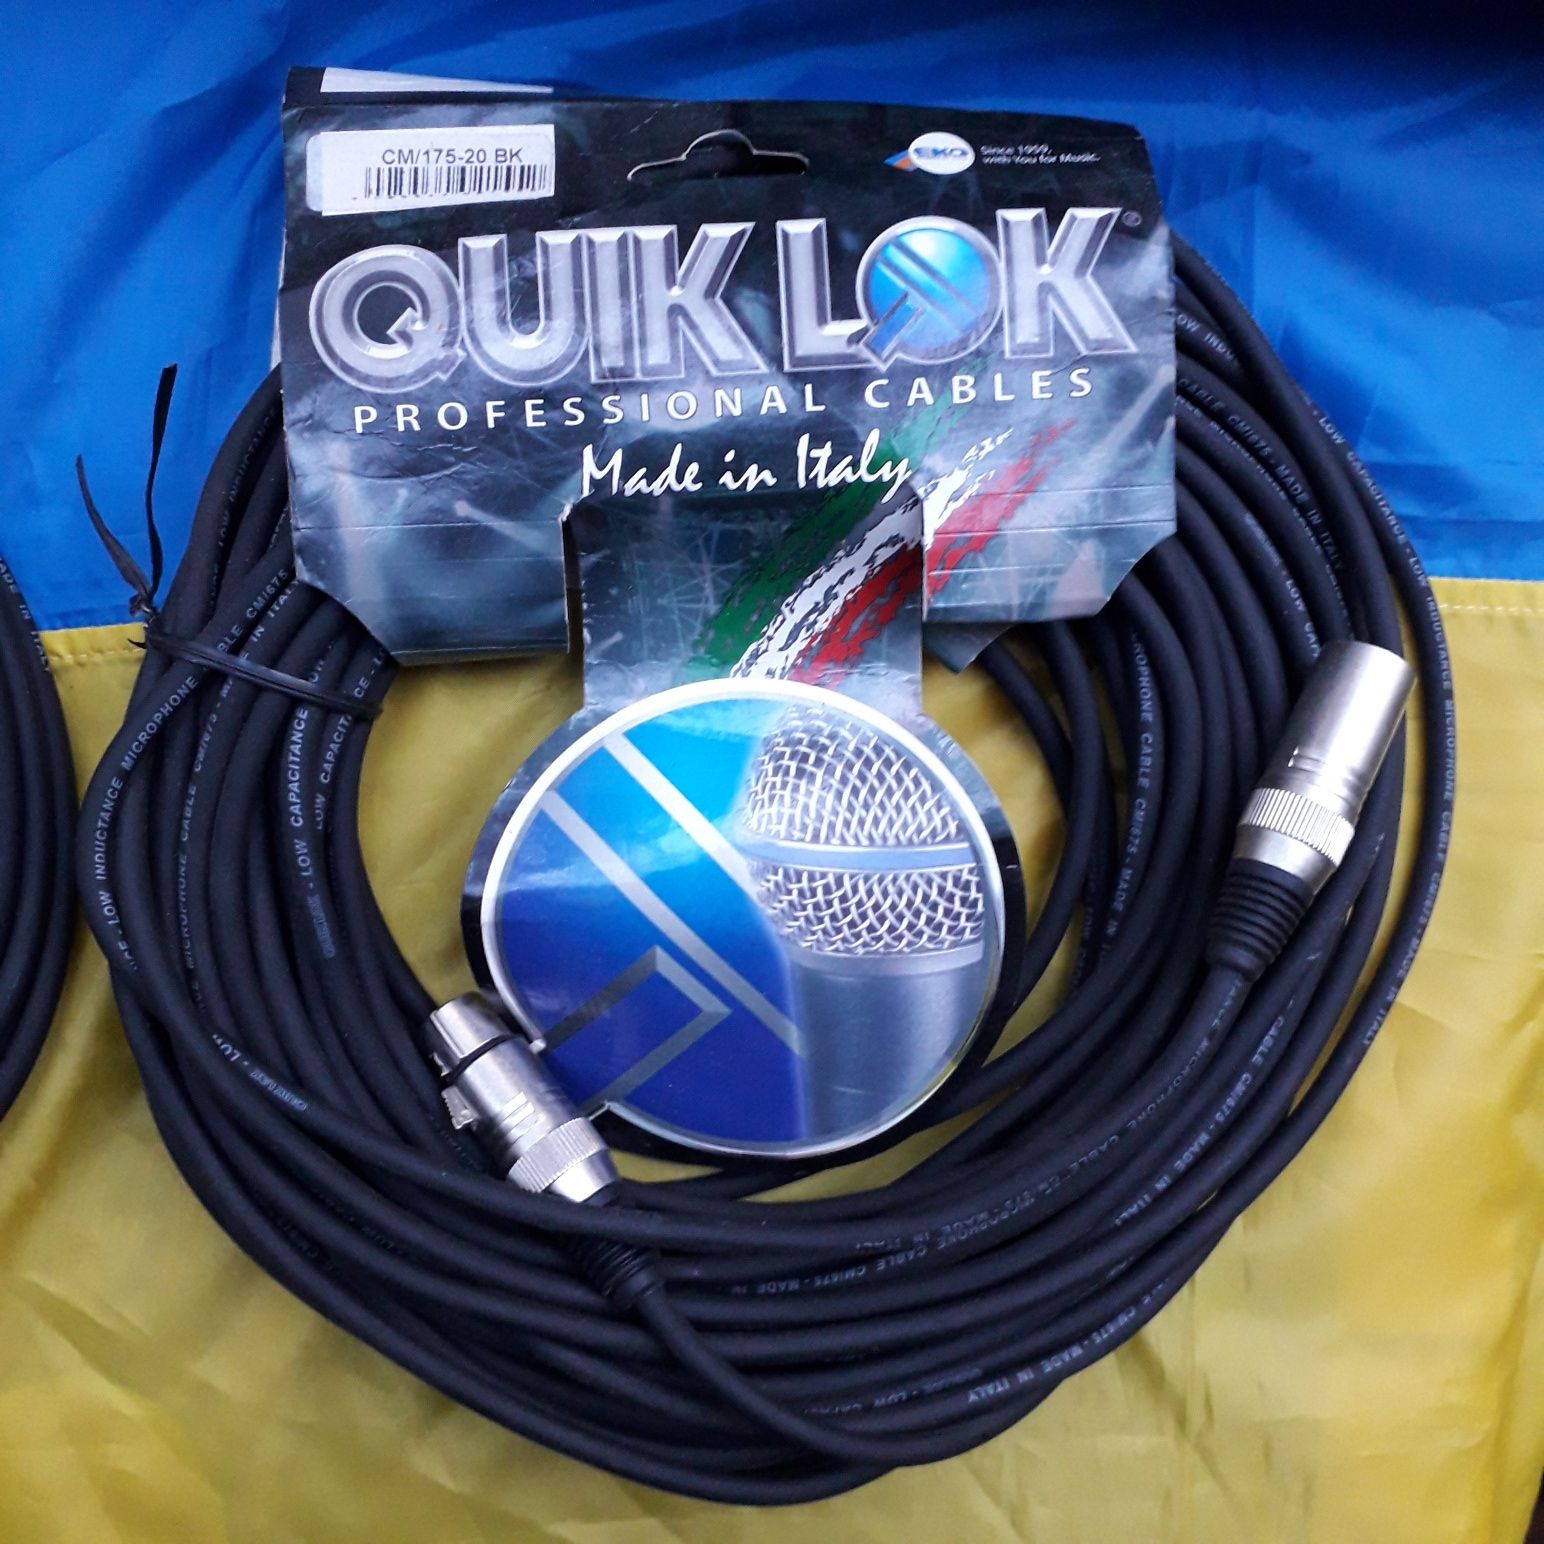 Професiйний iталiйський мiкрофонний кабель Quilk lok